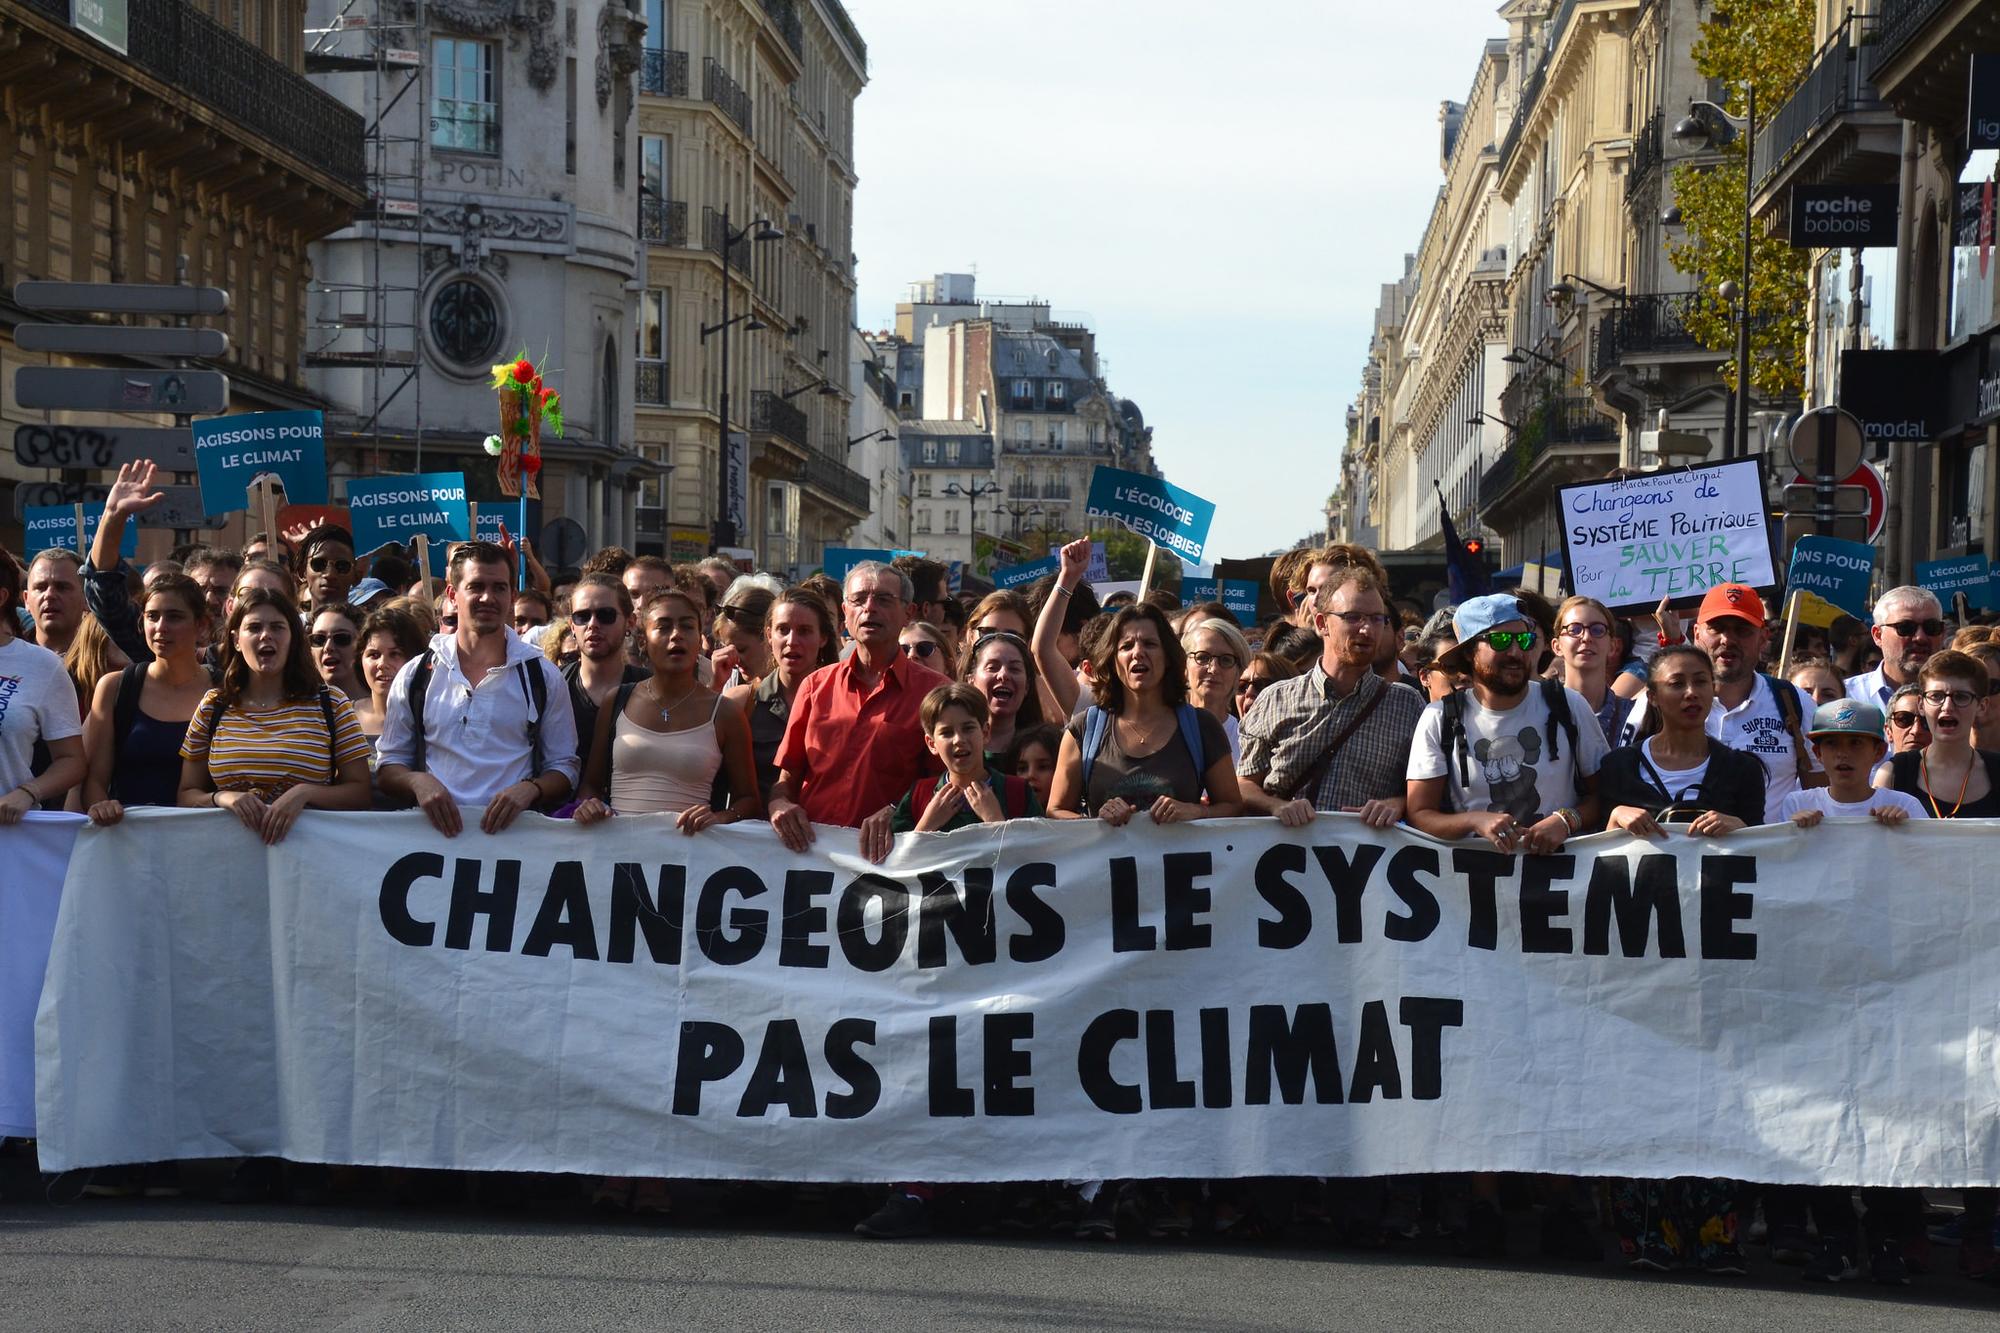 Paris Cambio Climático